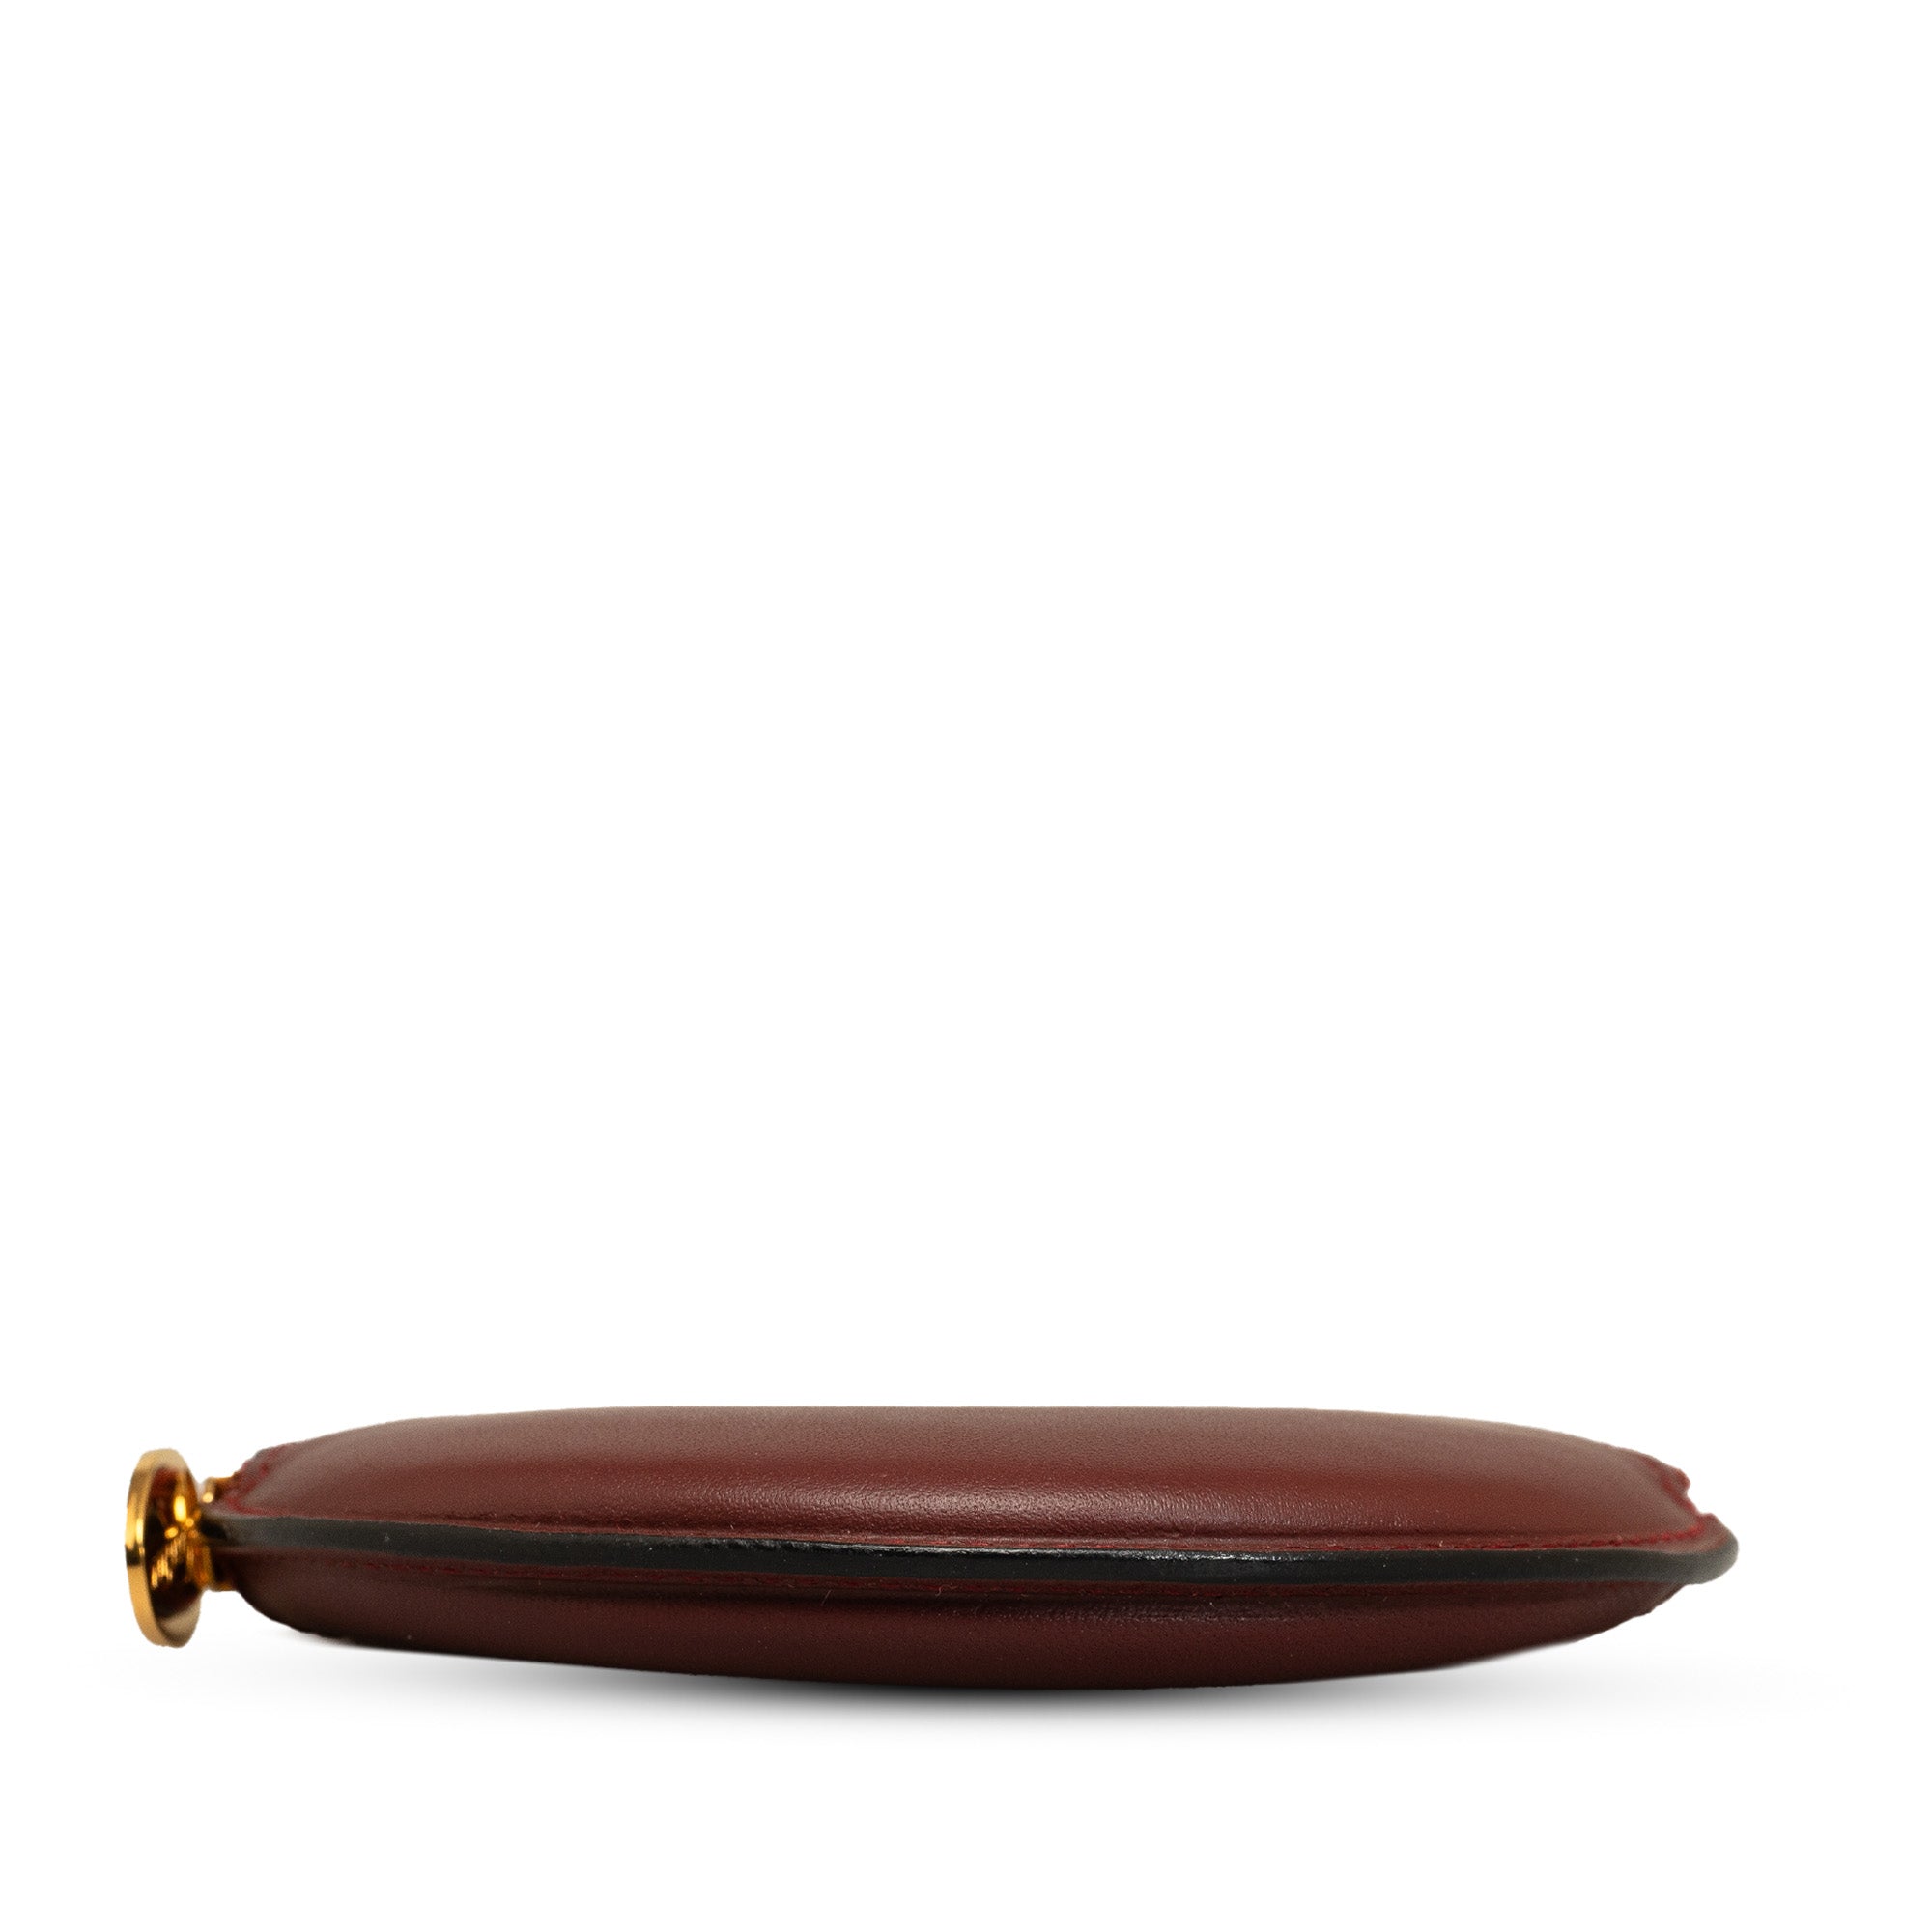 Authentic Cartier coin case mast coin purse Bordeaux 2C C2 Leather Must |  eBay